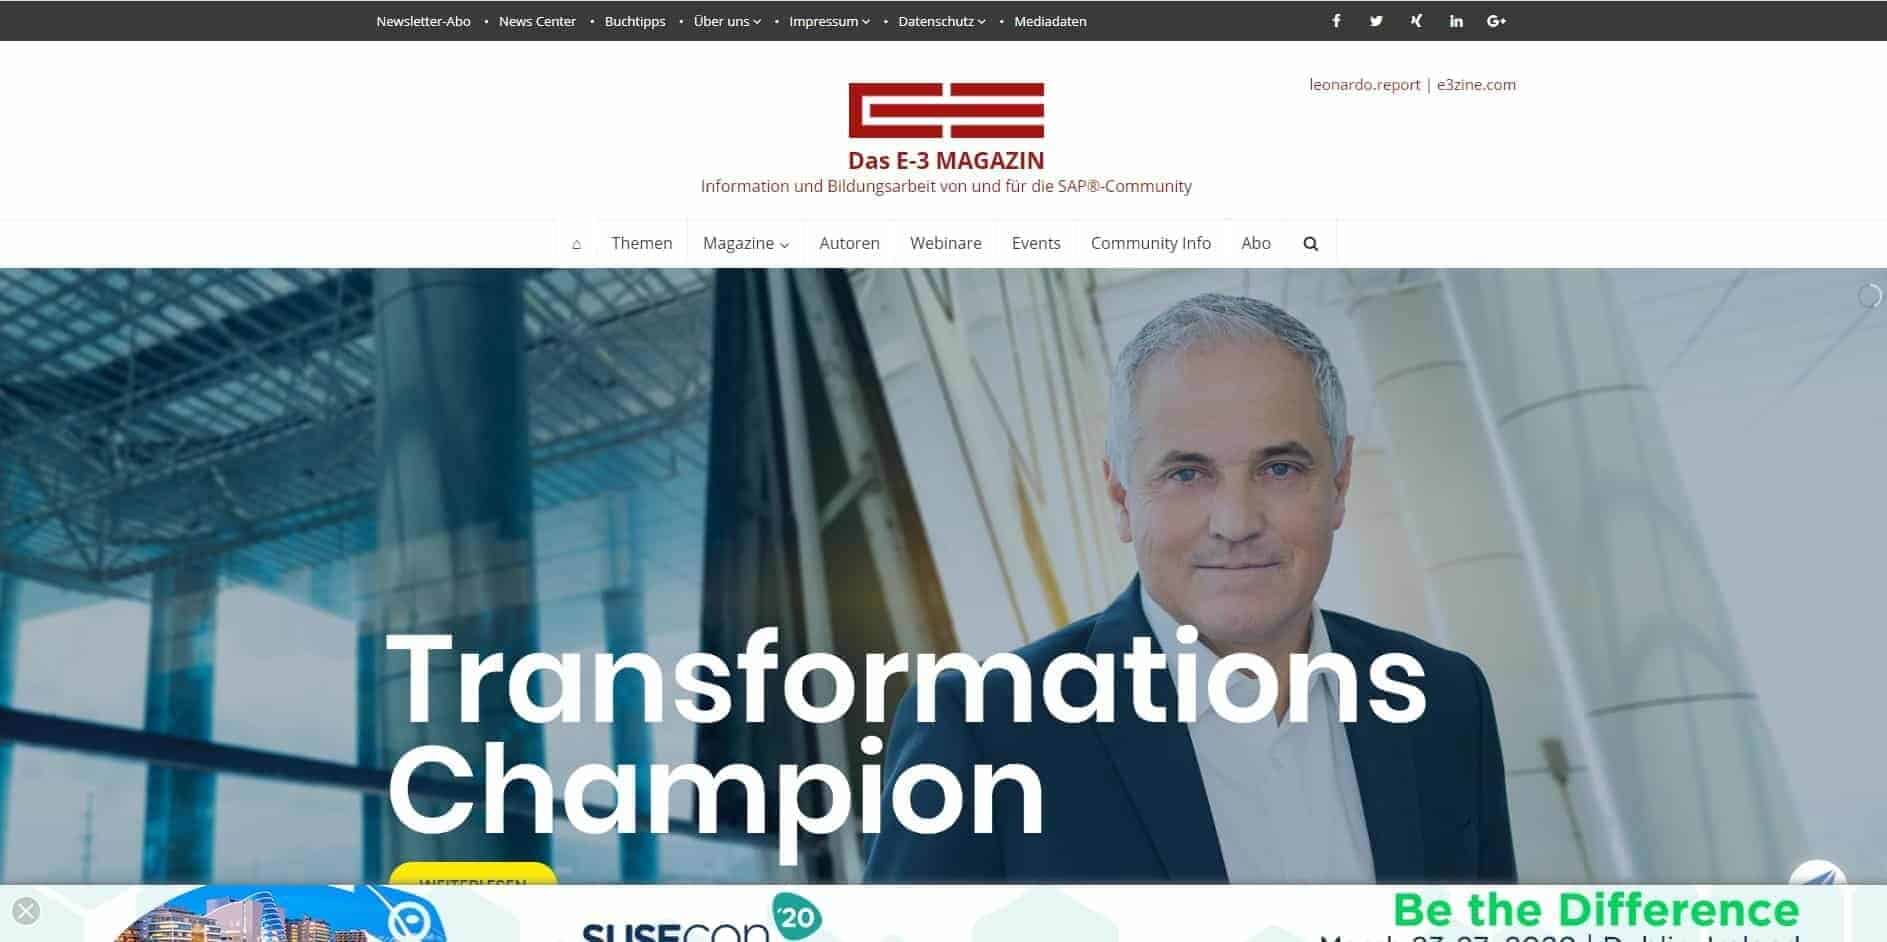 Peter Mavrakis, Das E-3 Magazin - Information und Bildungsarbeit von und für die SAP-Community